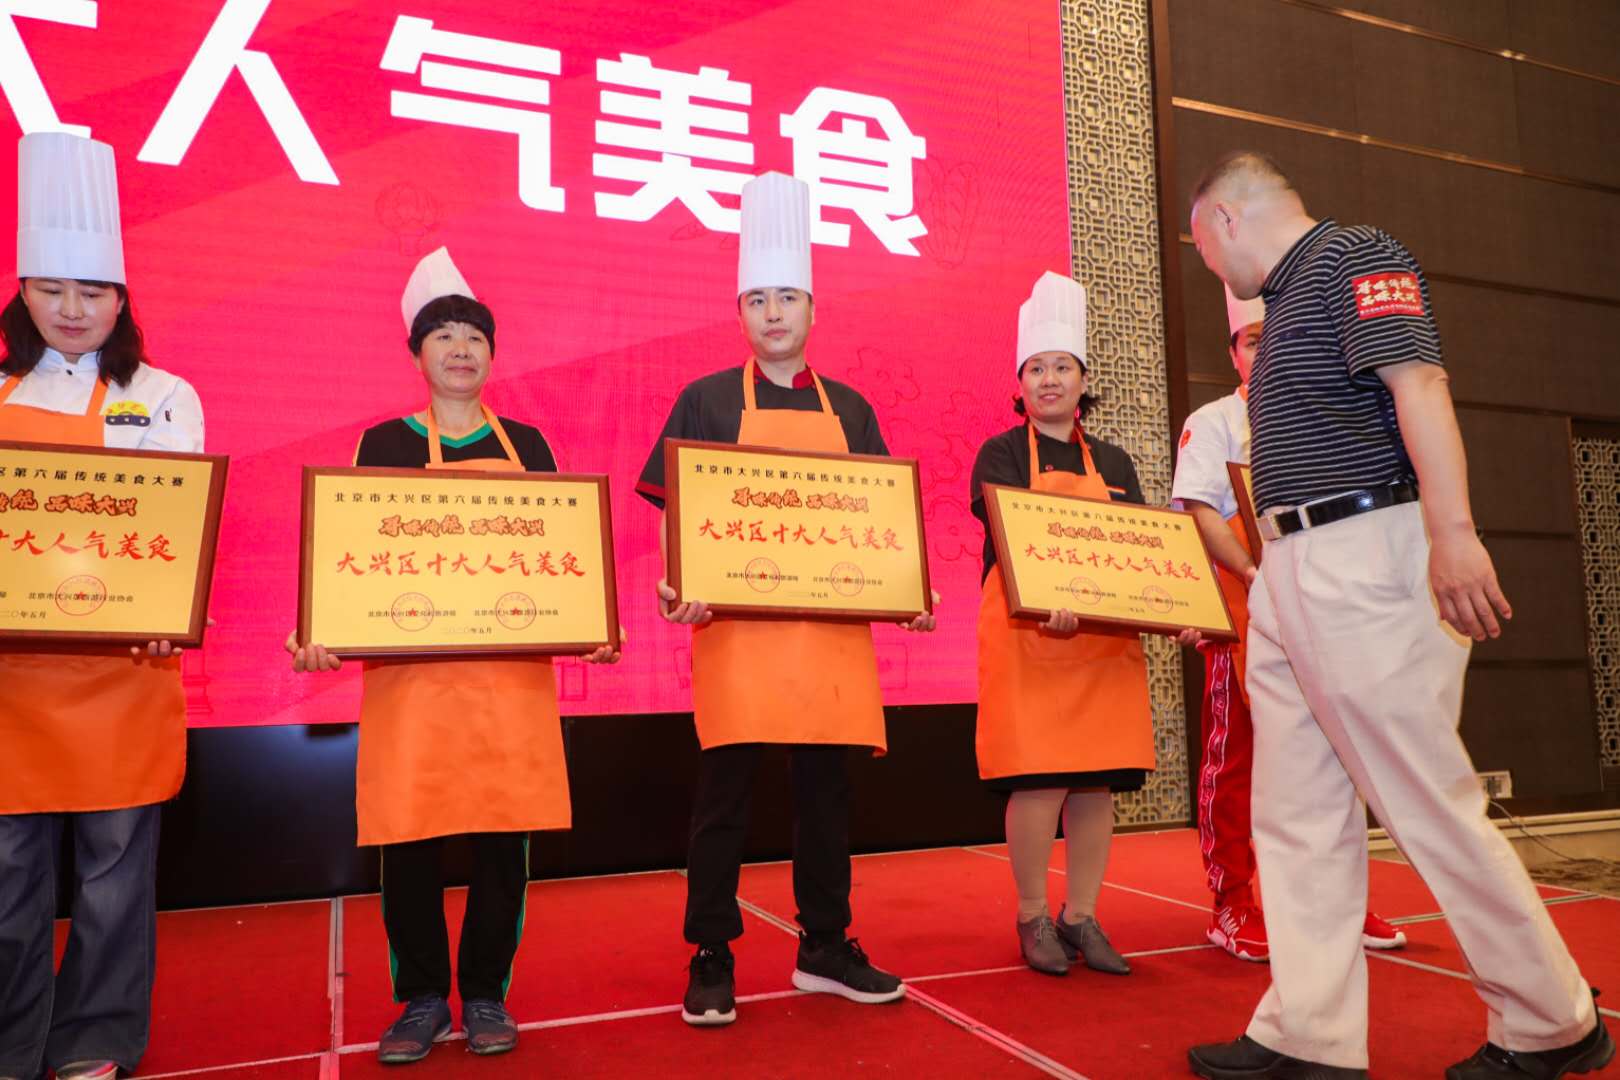 留民营获奖 北京大兴第六届“寻味传统·品味大兴”传统美食大赛